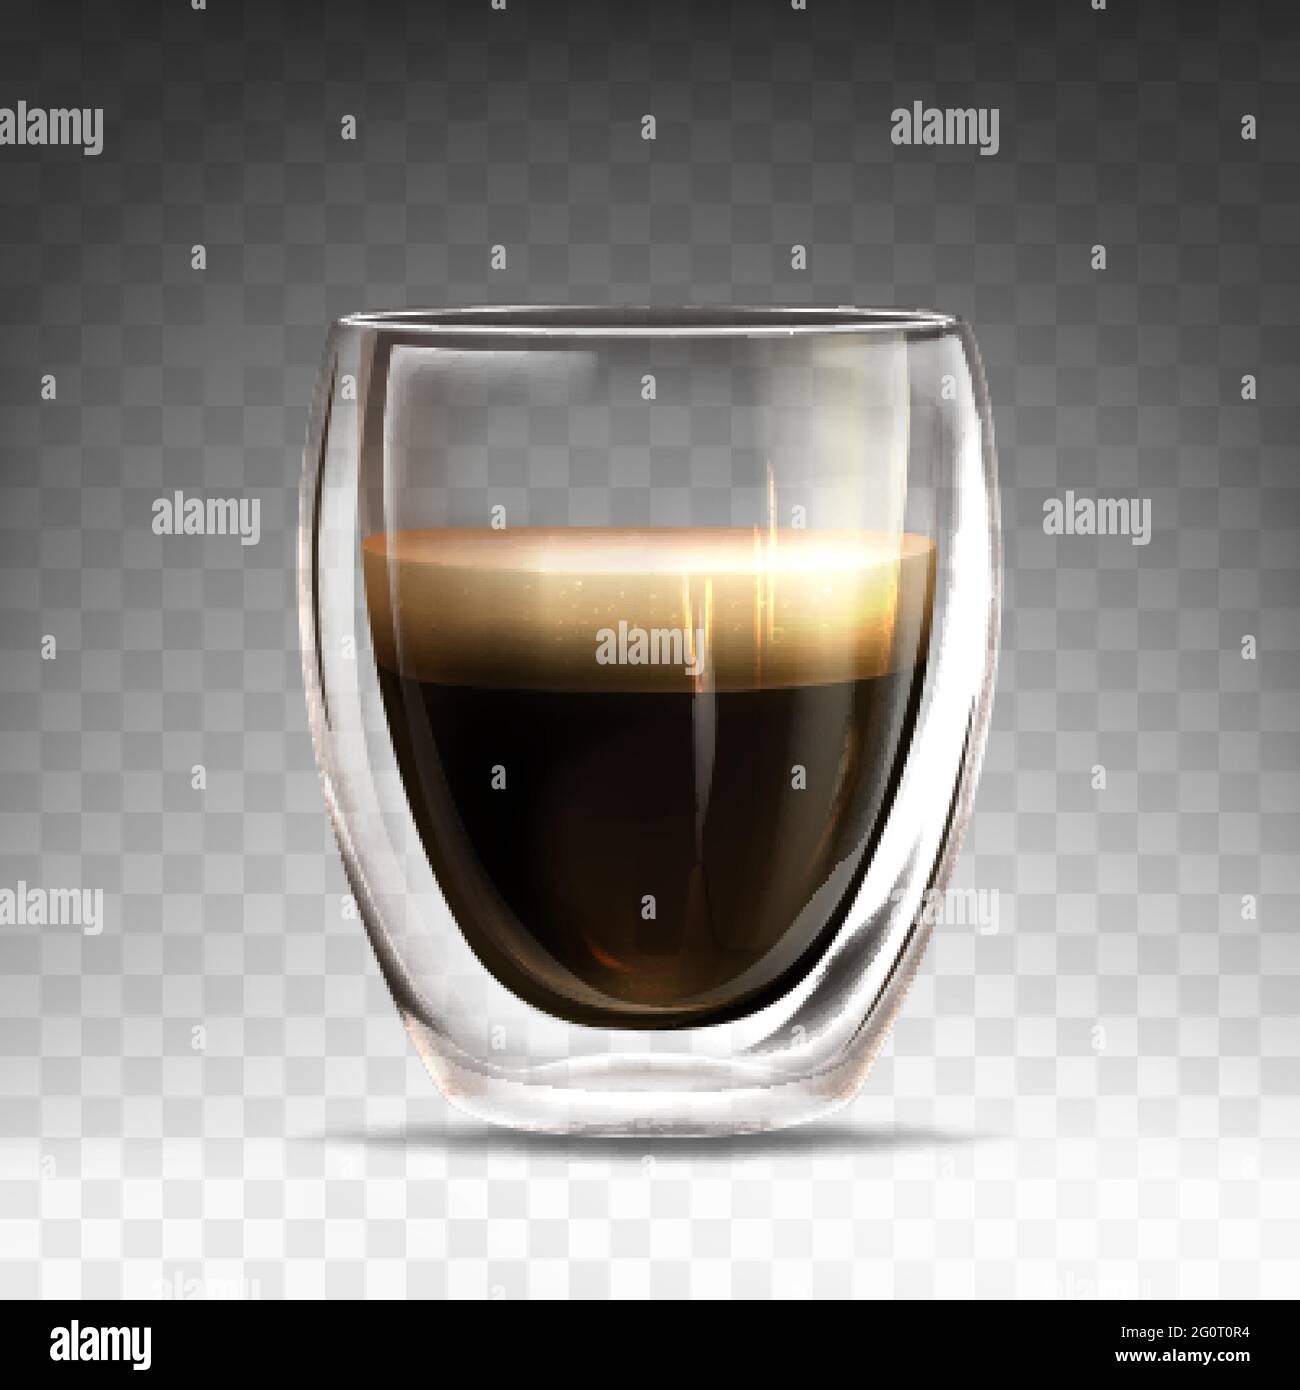 Realistische Tasse aus glänzendem Glas mit heißem Espresso. Becher mit Doppelwand voller Aroma americano. Kaffeegetränk realistisch auf transparentem Hintergrund. Vorlage für Branding, Werbung oder Produktdesign. Stock Vektor